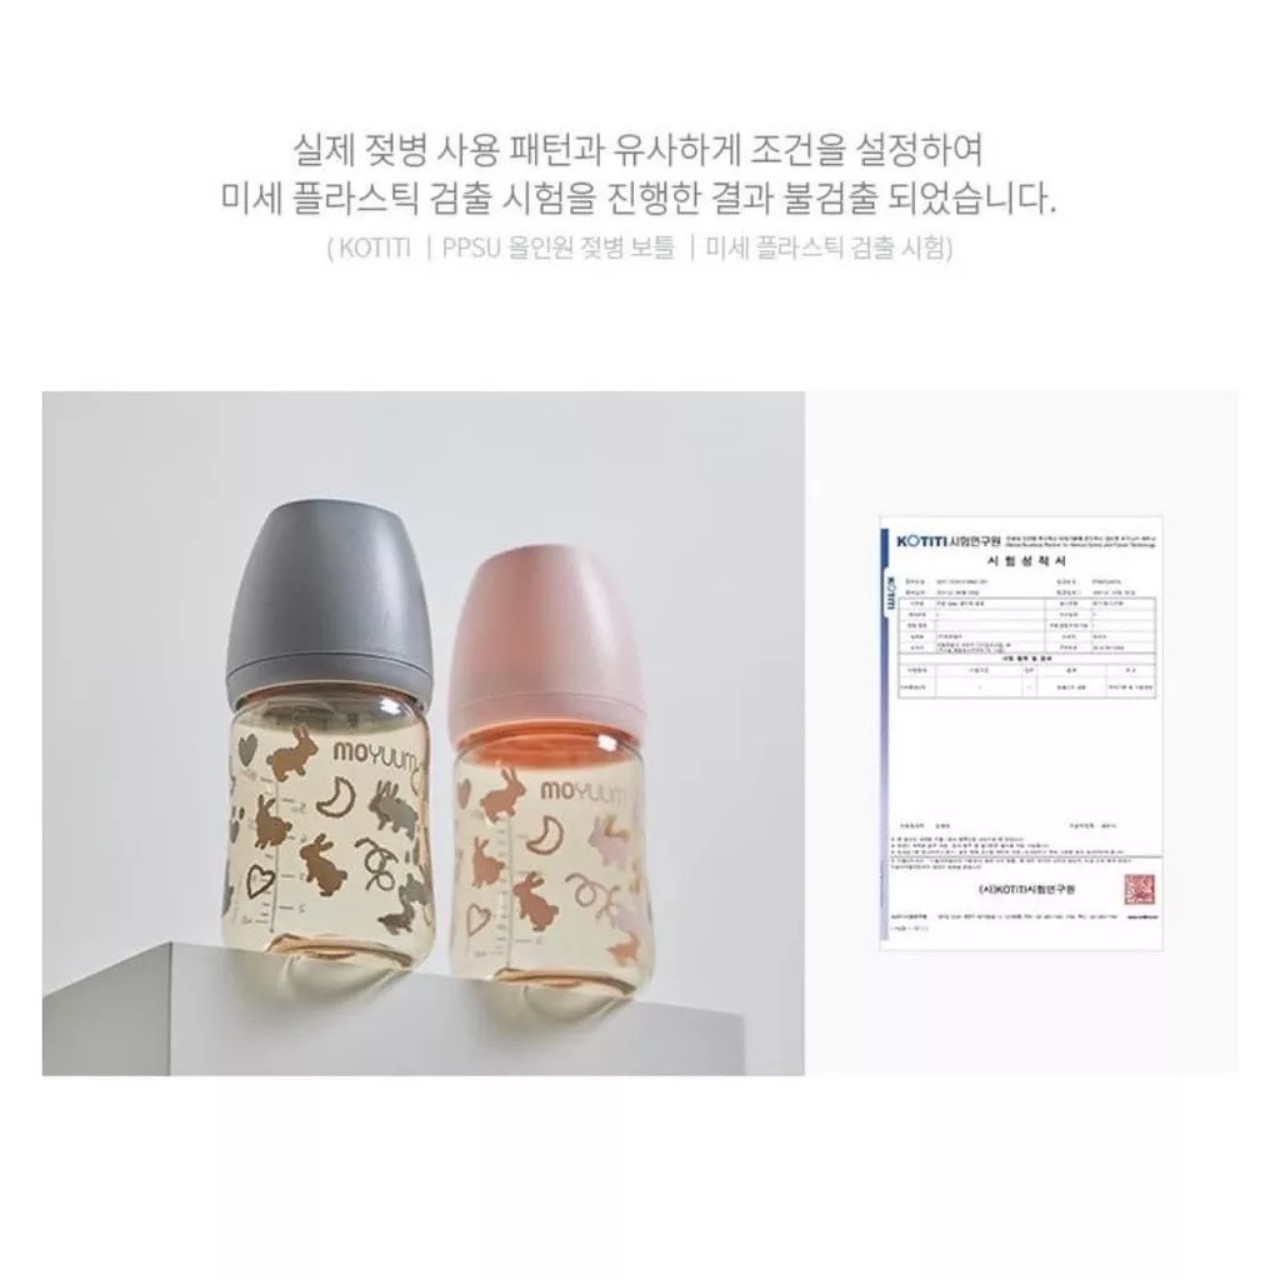 Bình sữa Moyuum Hàn Quốc 170ml Thỏ Hồng (Rabbit Limited Edition)